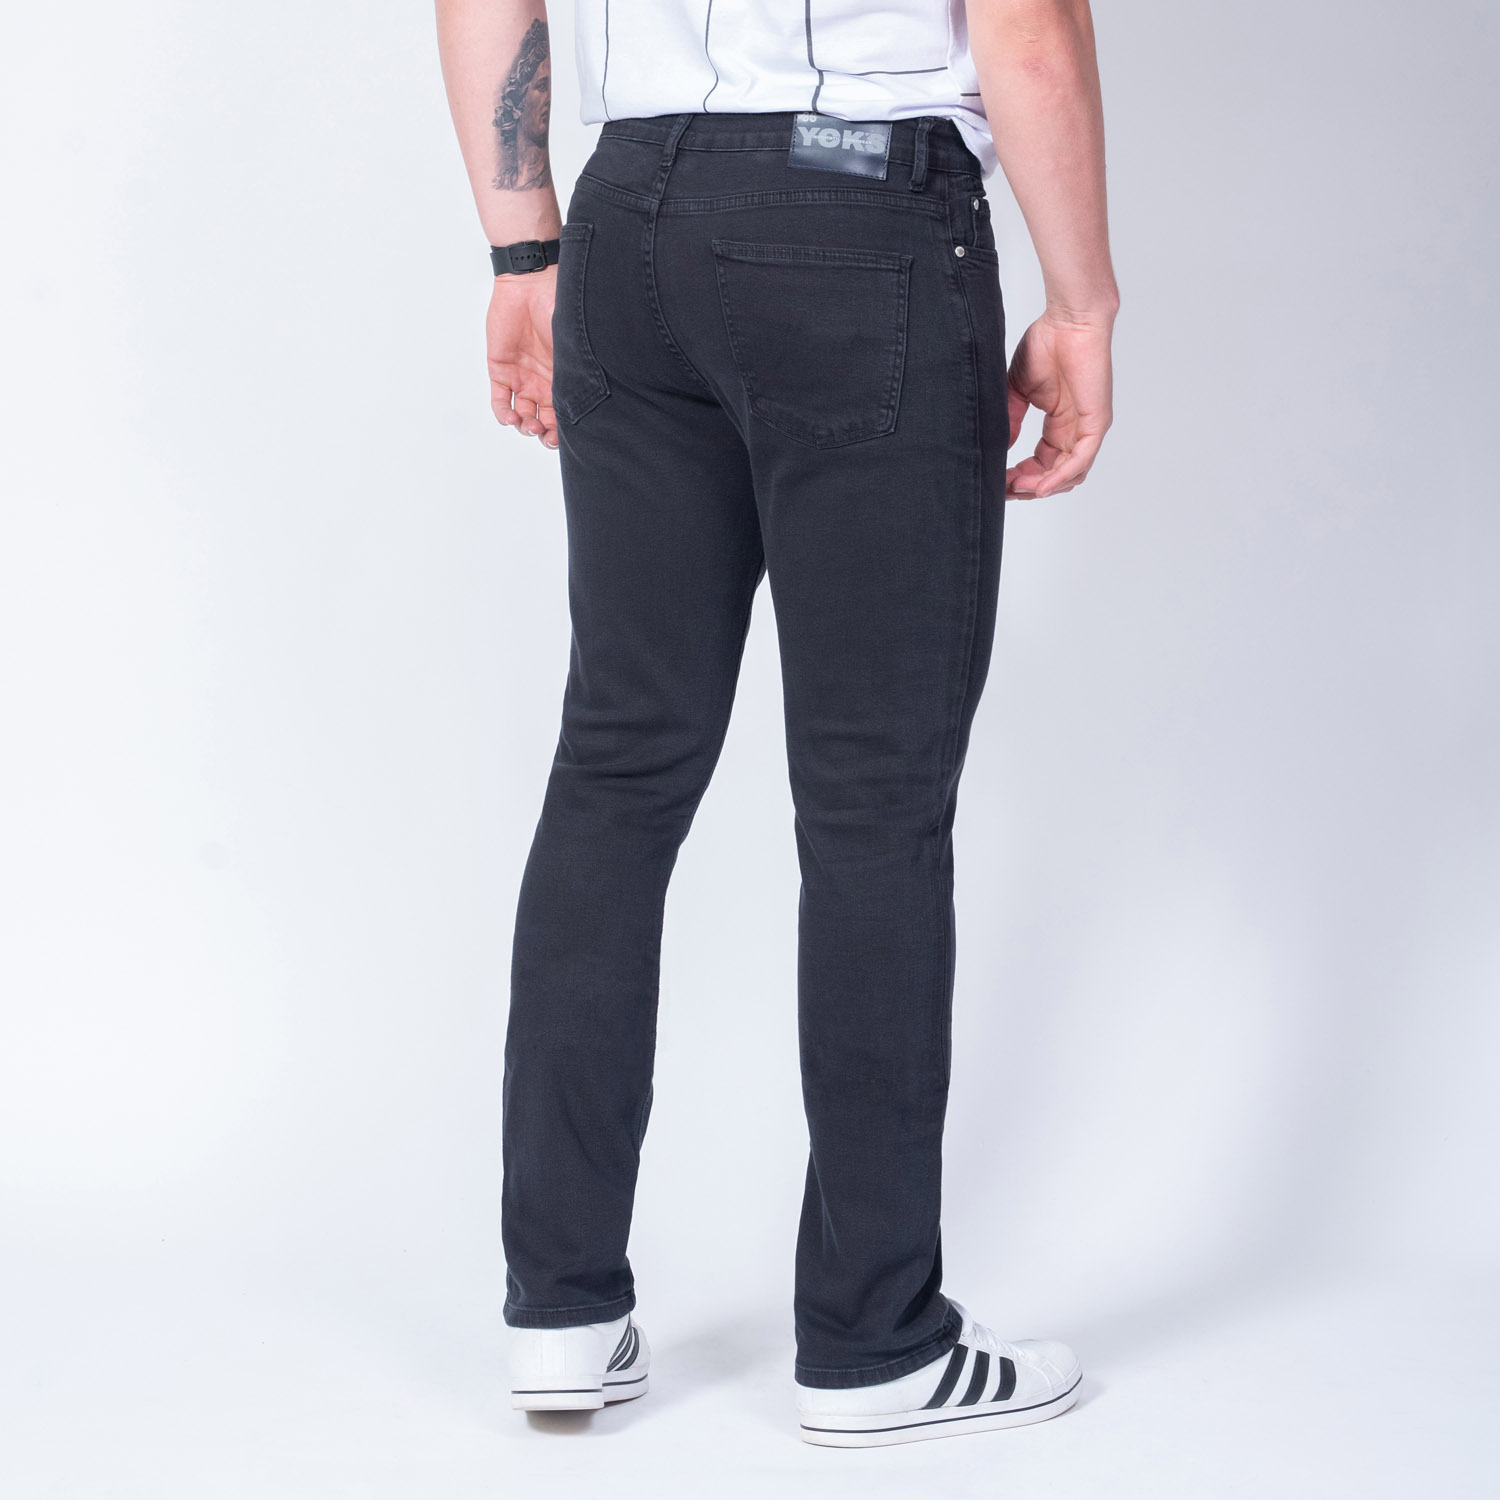 Calça Jeans Black Slim Cintura Média Yck's